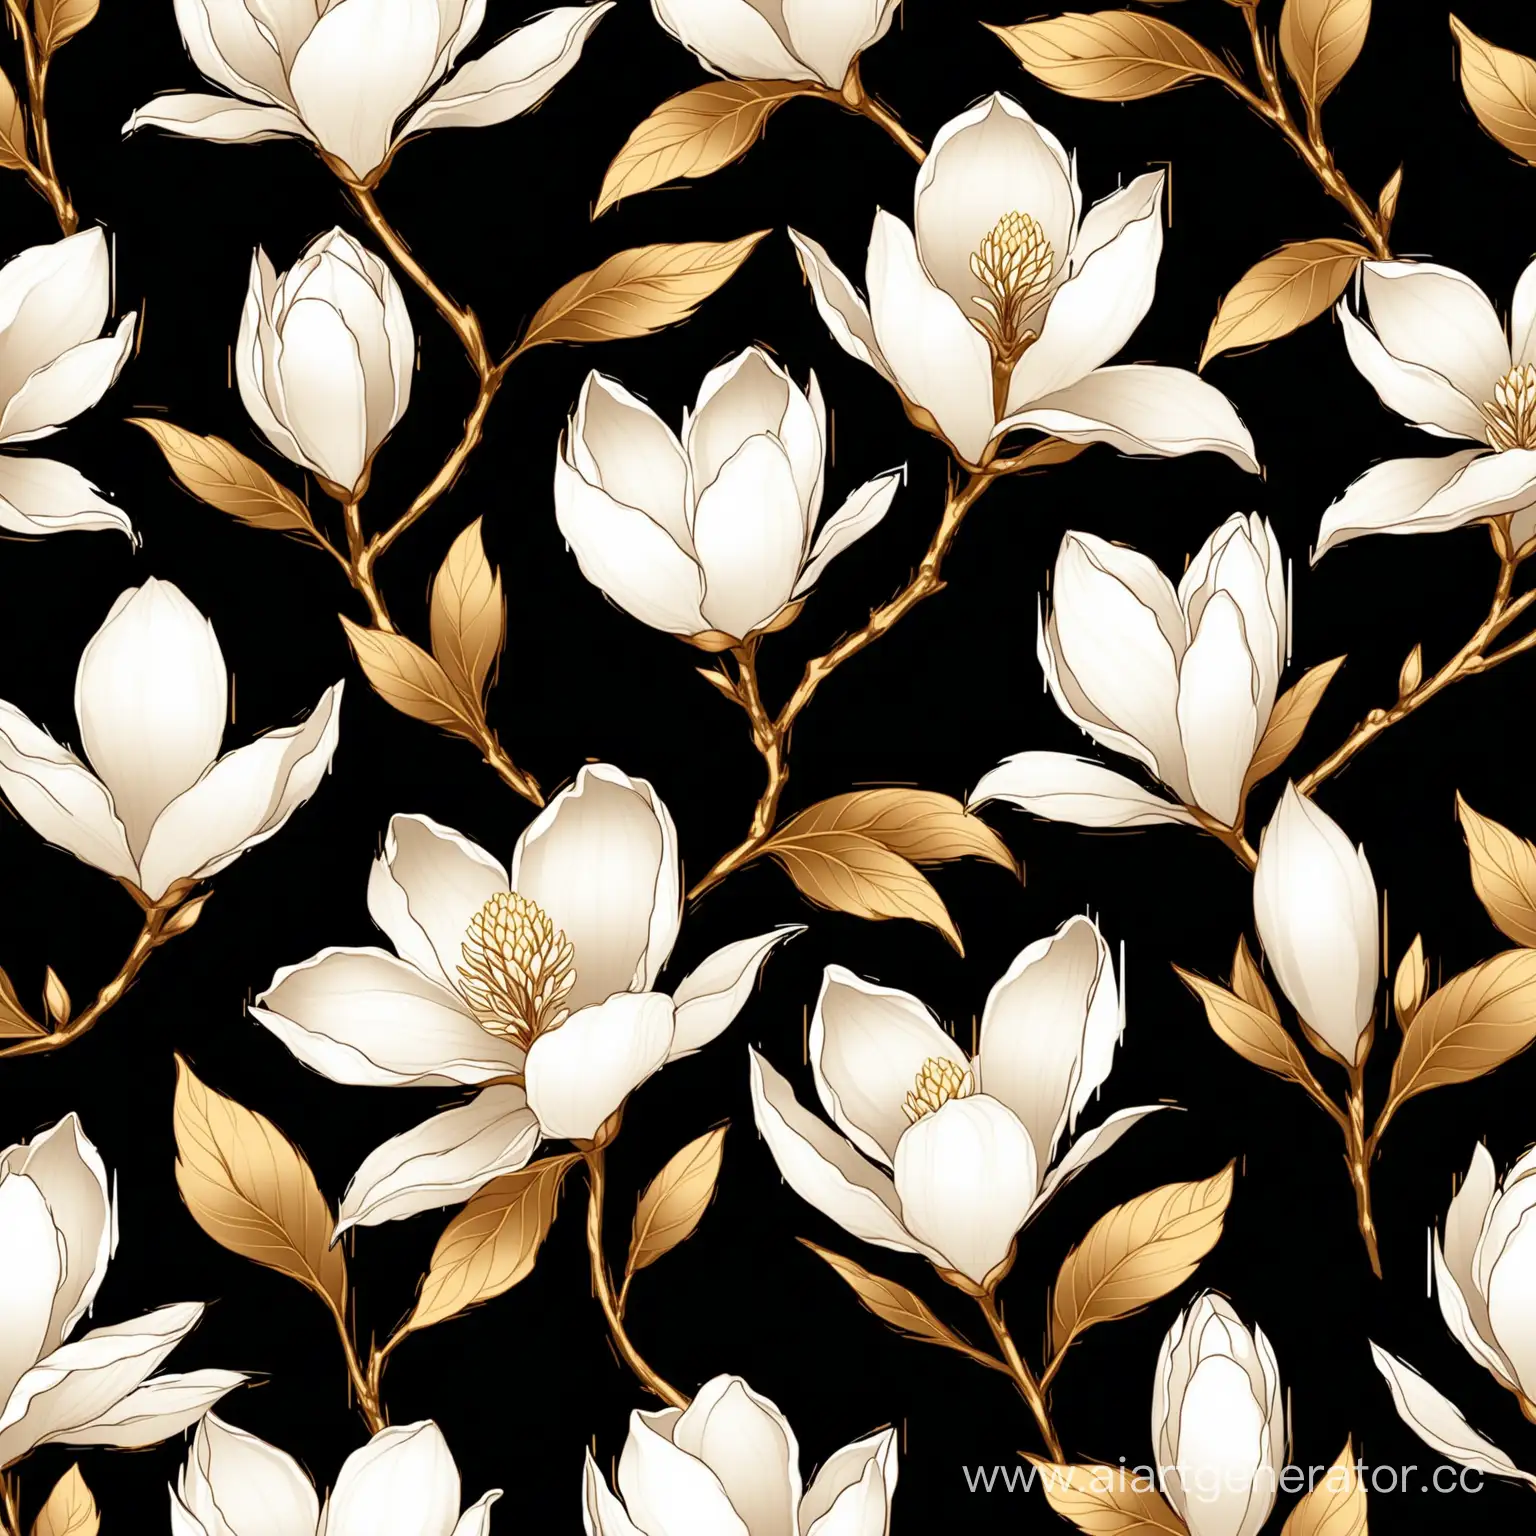 Golden-and-Blue-Magnolia-Flower-Vector-Illustration-on-Black-Background